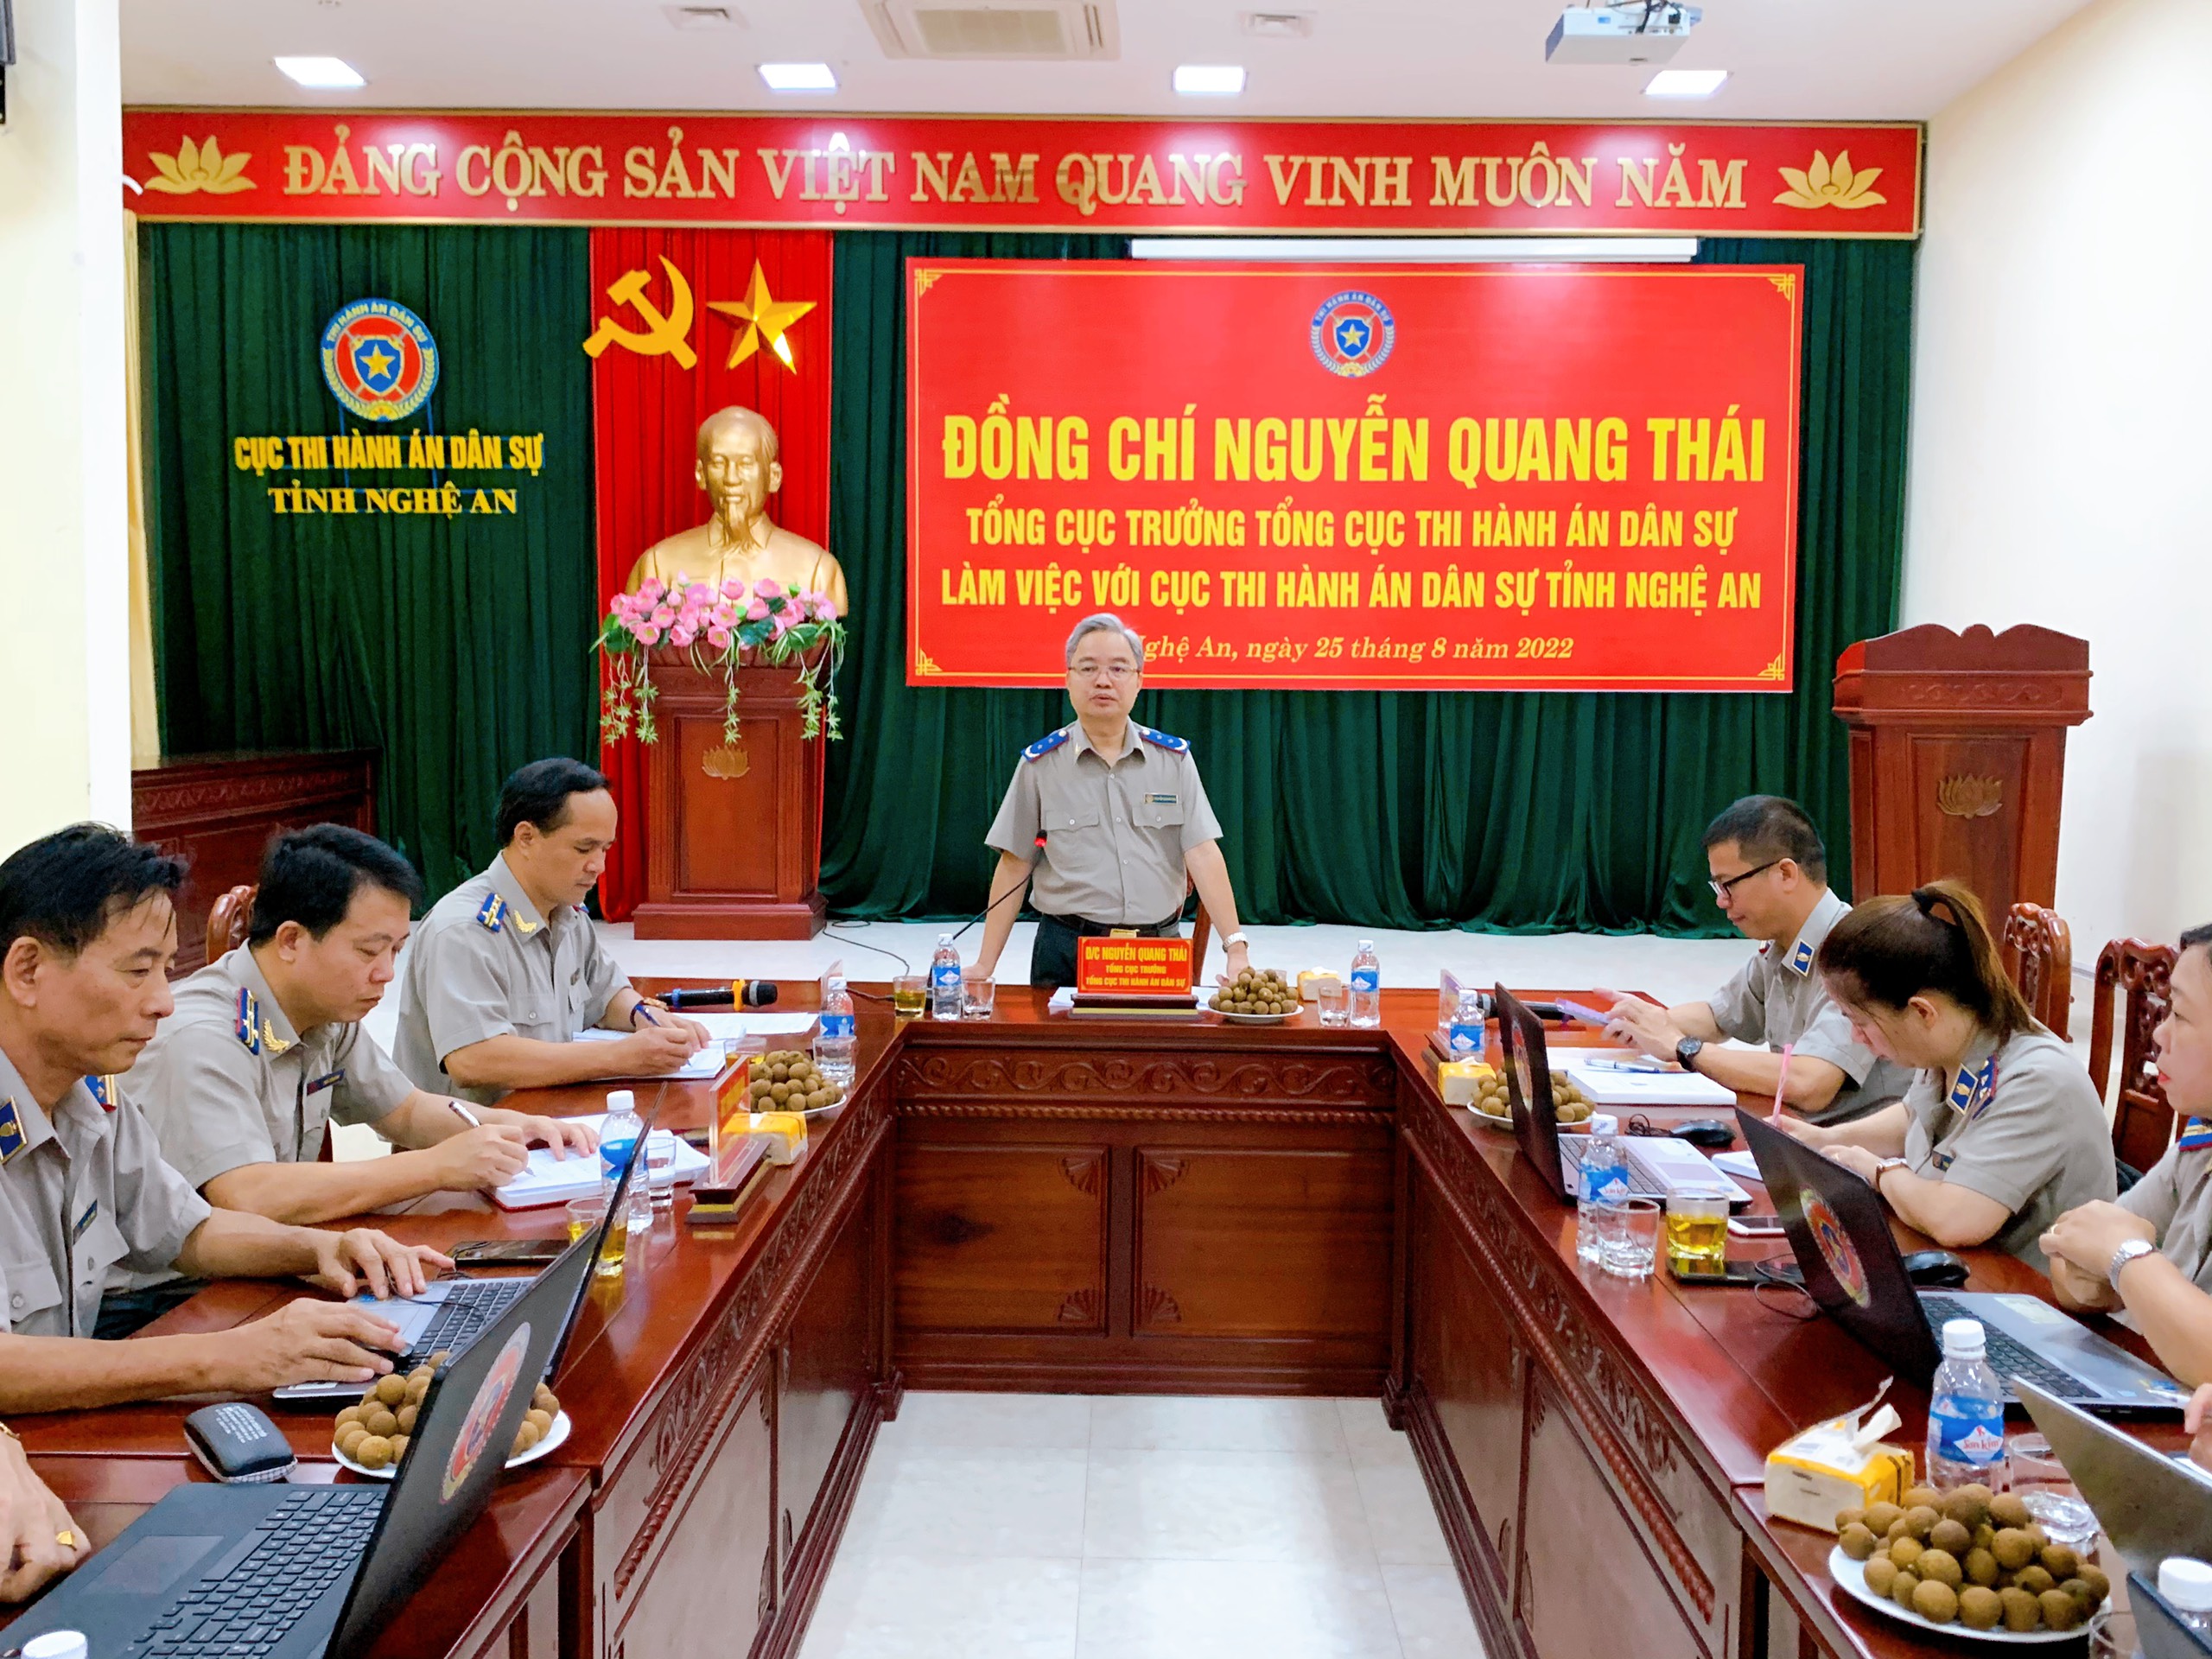 Đồng chí Nguyễn Quang Thái – Tổng cục trưởng Tổng cục Thi hành án dân  làm việc với Cục Thi hành án dân sự tỉnh Nghệ An.